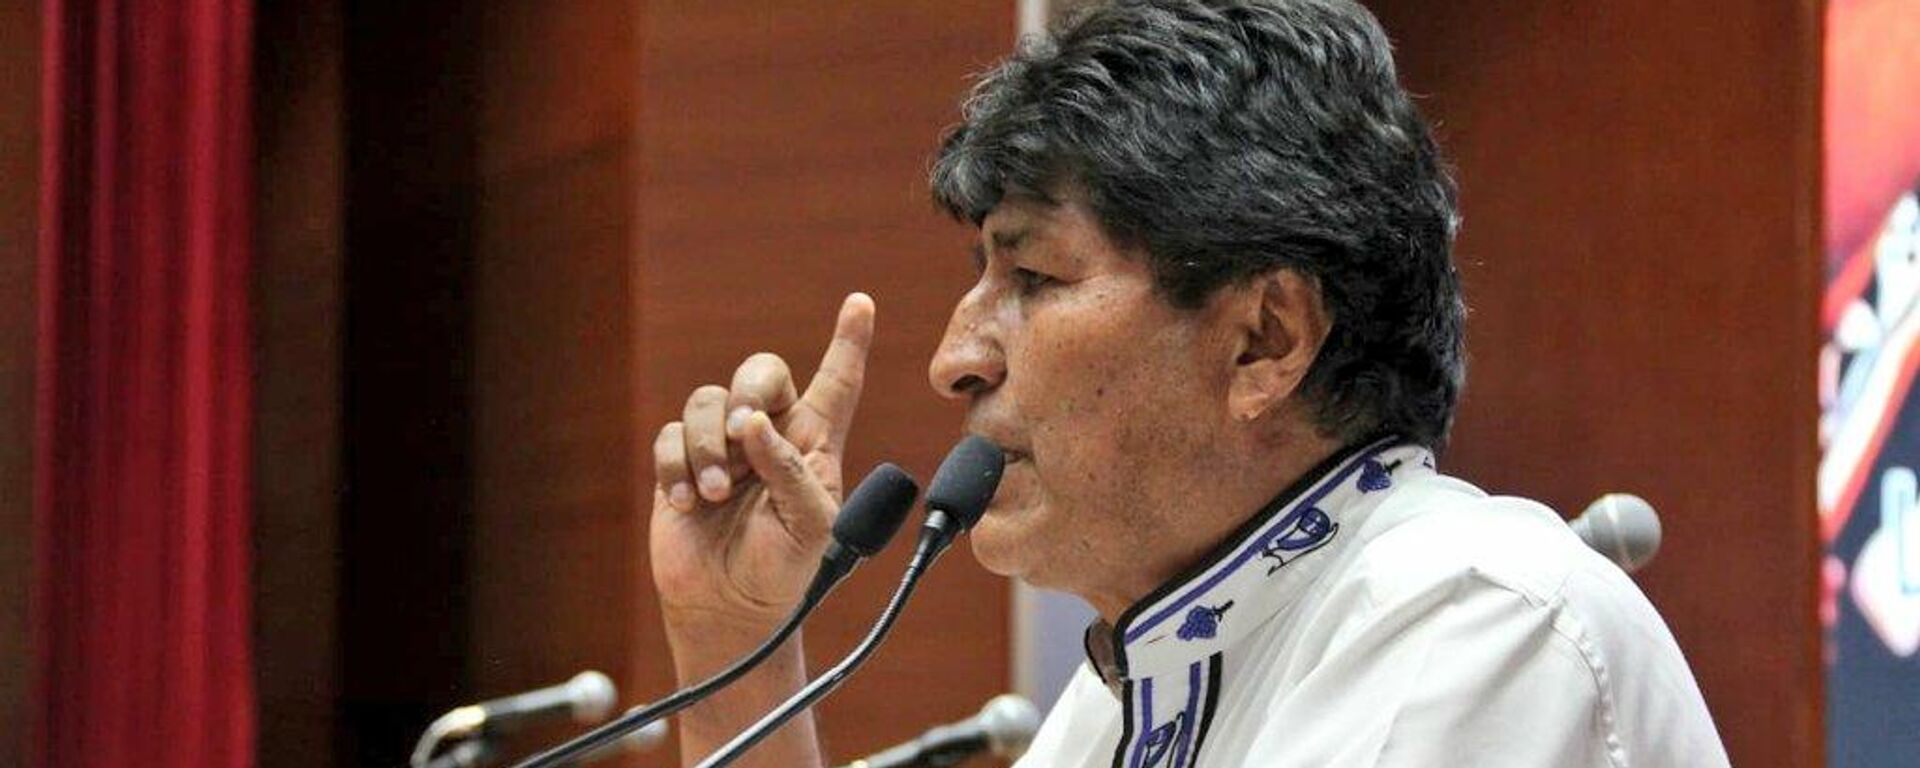 Evo Morales, expresidente de Bolivia - Sputnik Mundo, 1920, 11.11.2021